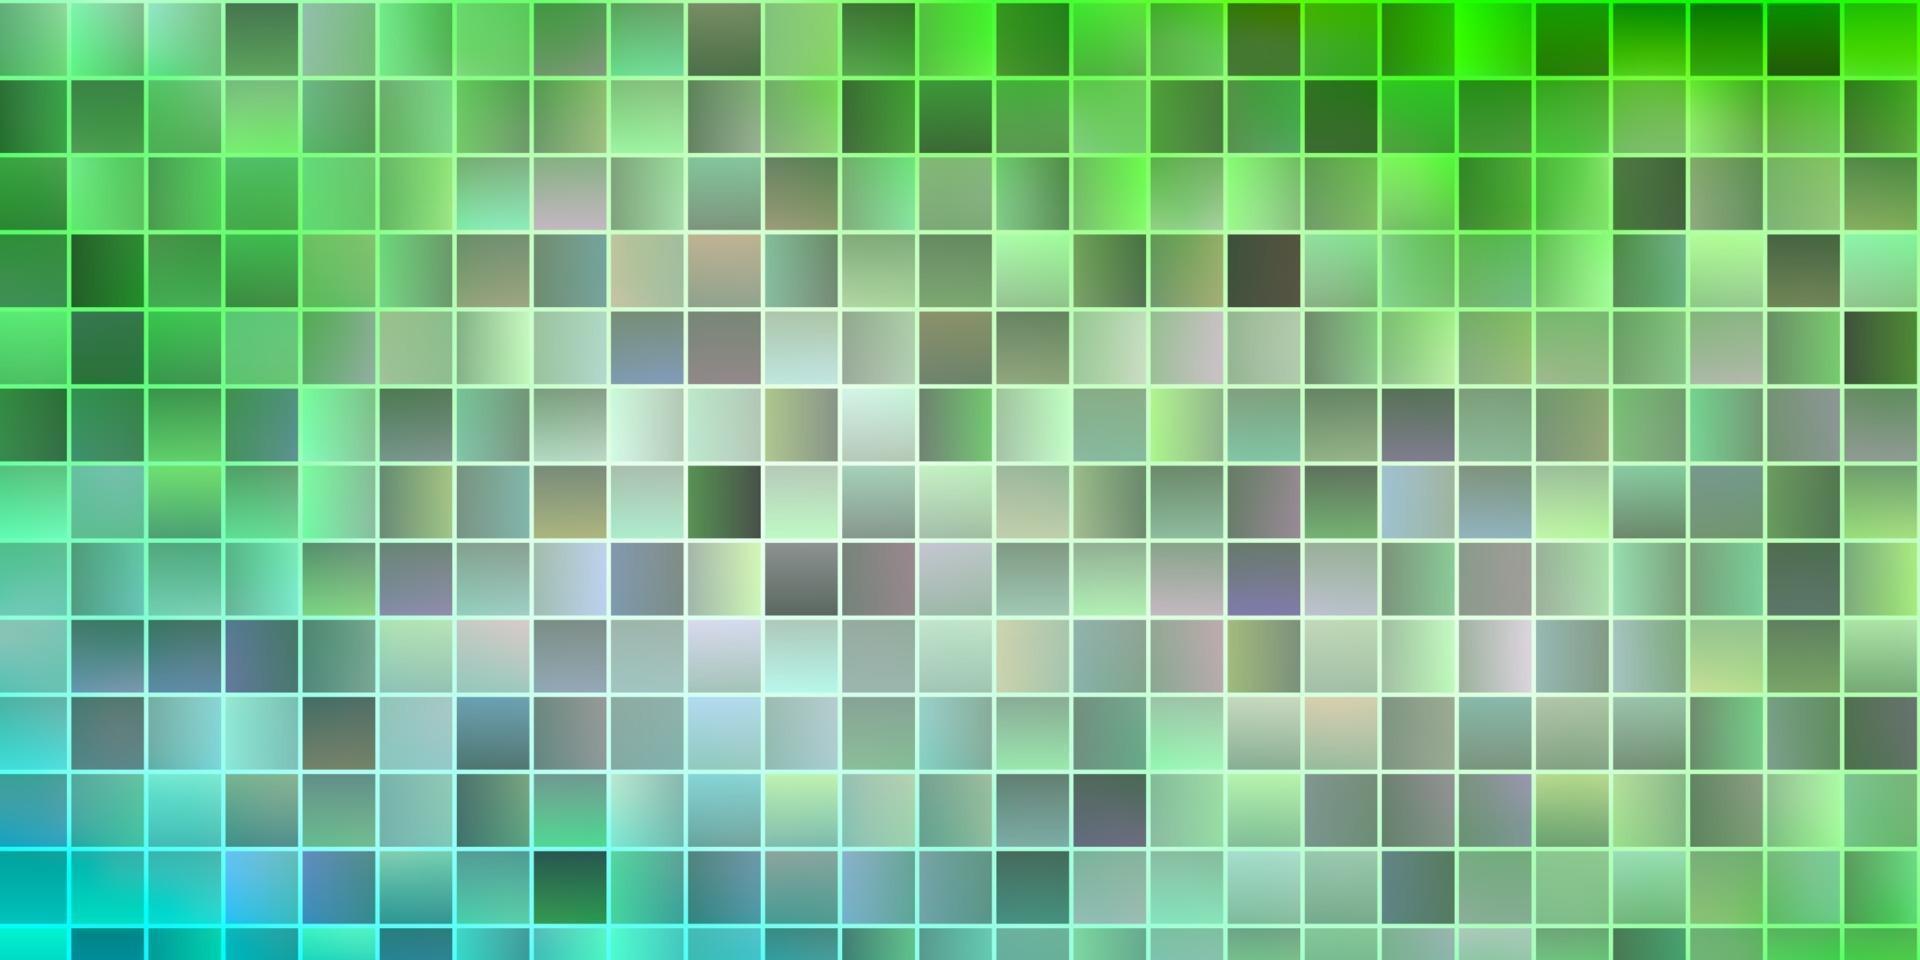 padrão de vetor verde claro em estilo quadrado.